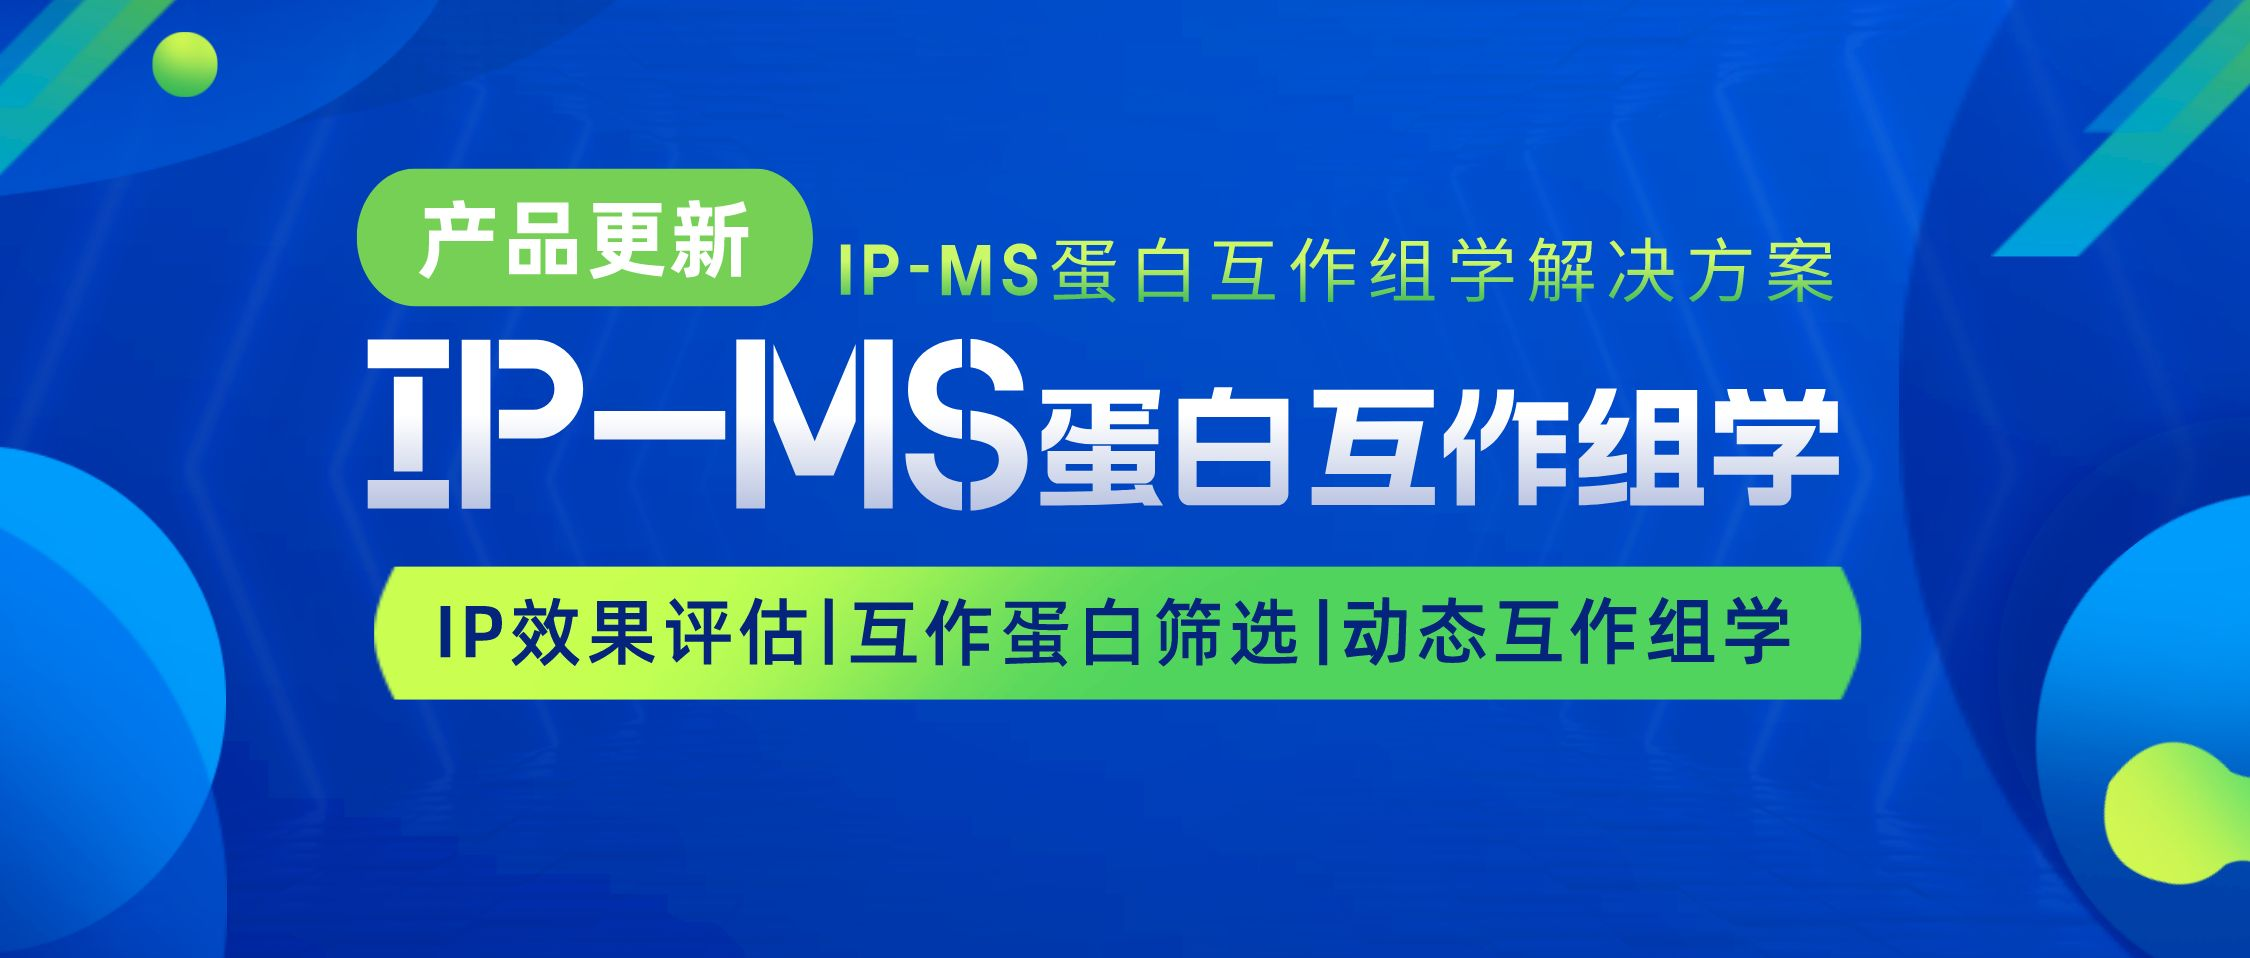 明星产品丨IP-MS蛋白互作组学解决方案